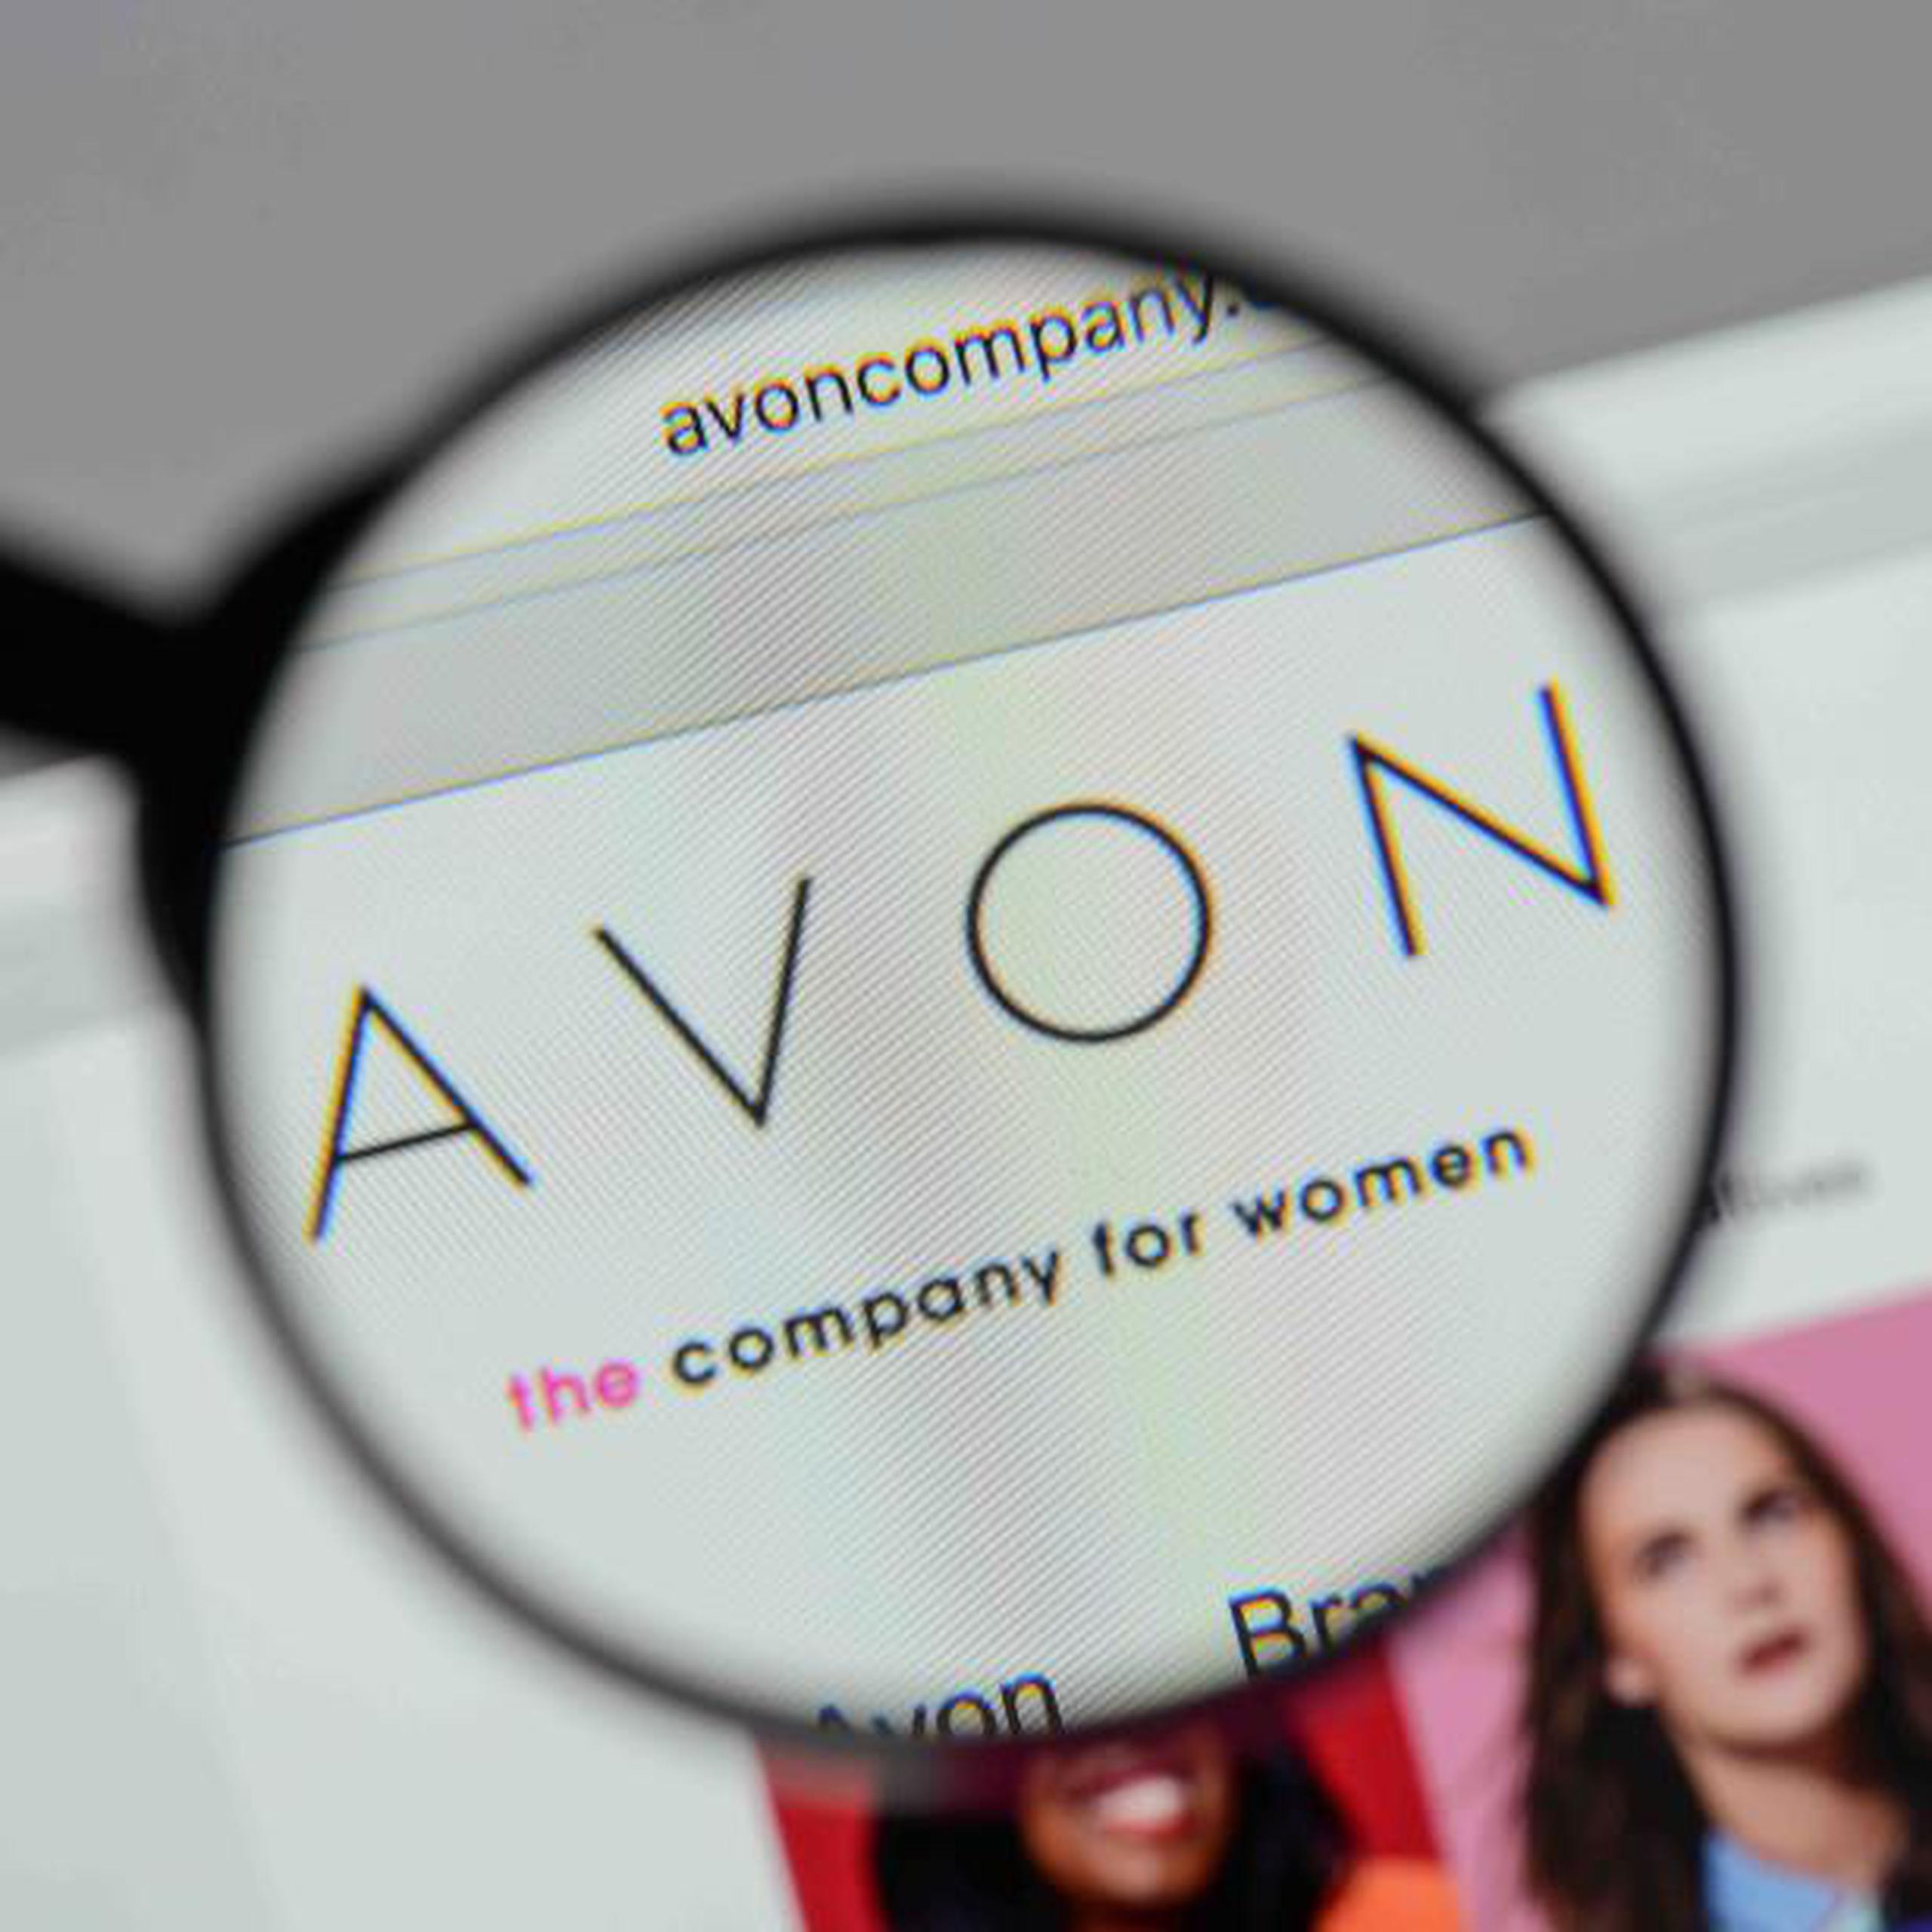 El director general de Avon, Jan Zijderveld, señaló que el acuerdo constituye un capítulo nuevo y emocionante en los 130 años de historia de la compañía. (Shutterstock)